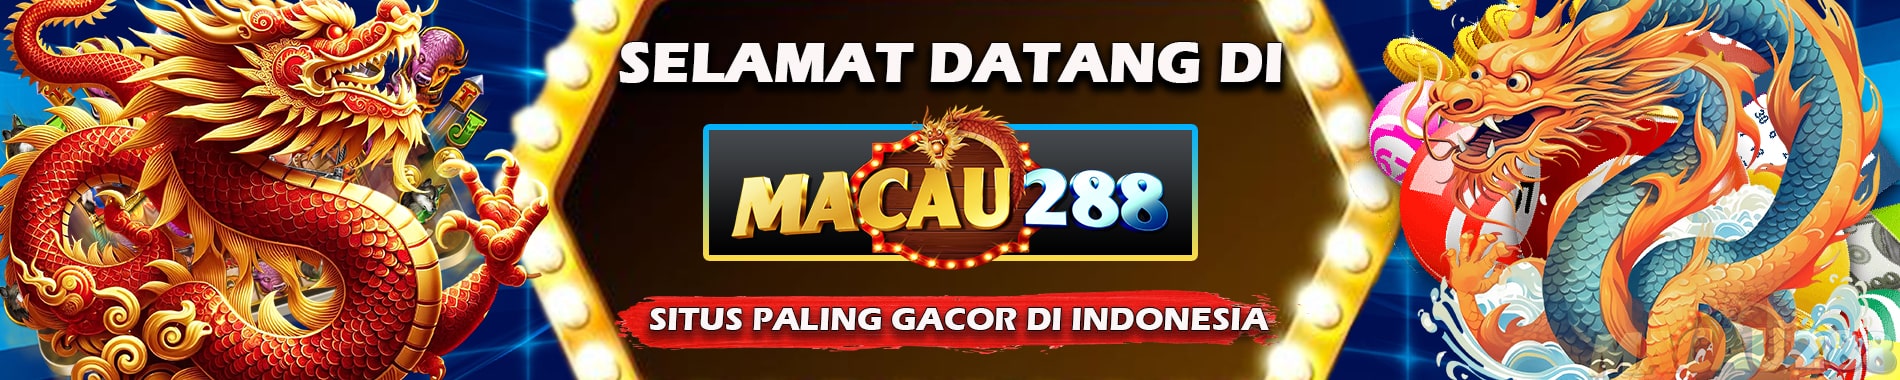 MACAU288 Situs Paling Gacor Di indonesia